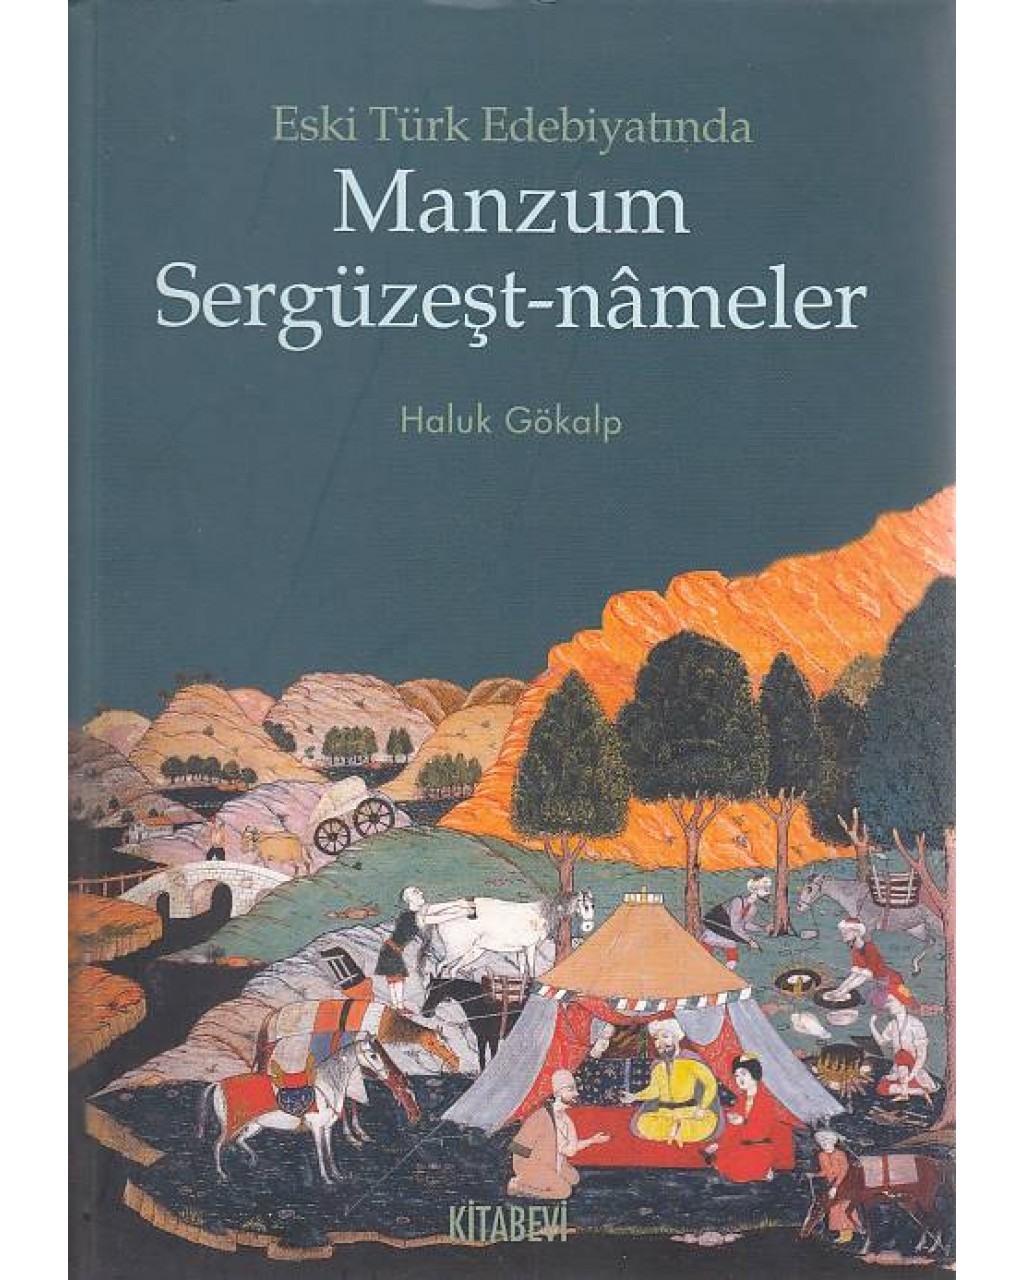 Eski Türk Edebiyatında Manzum Sergüzeşt-nameler